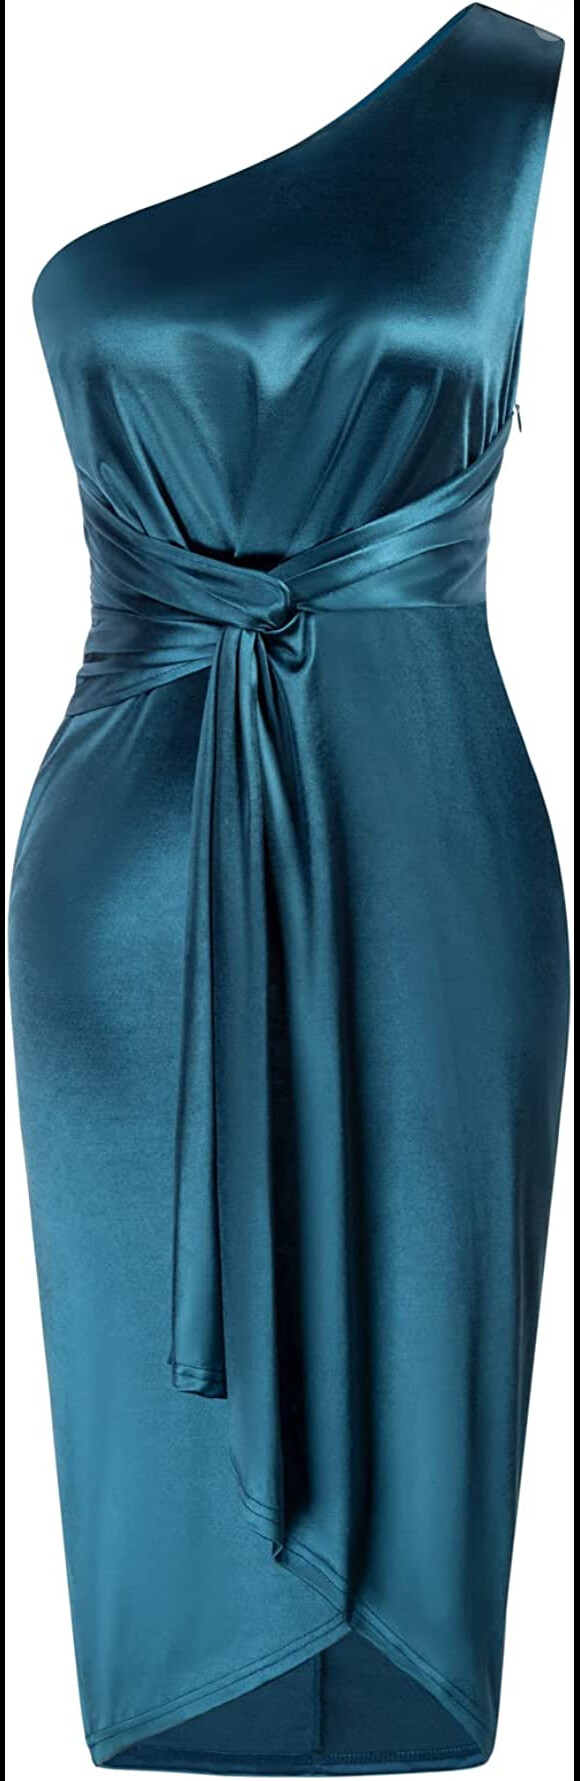 Alliez chic et audace avec cette robe bleue asymétrique Grace Karin